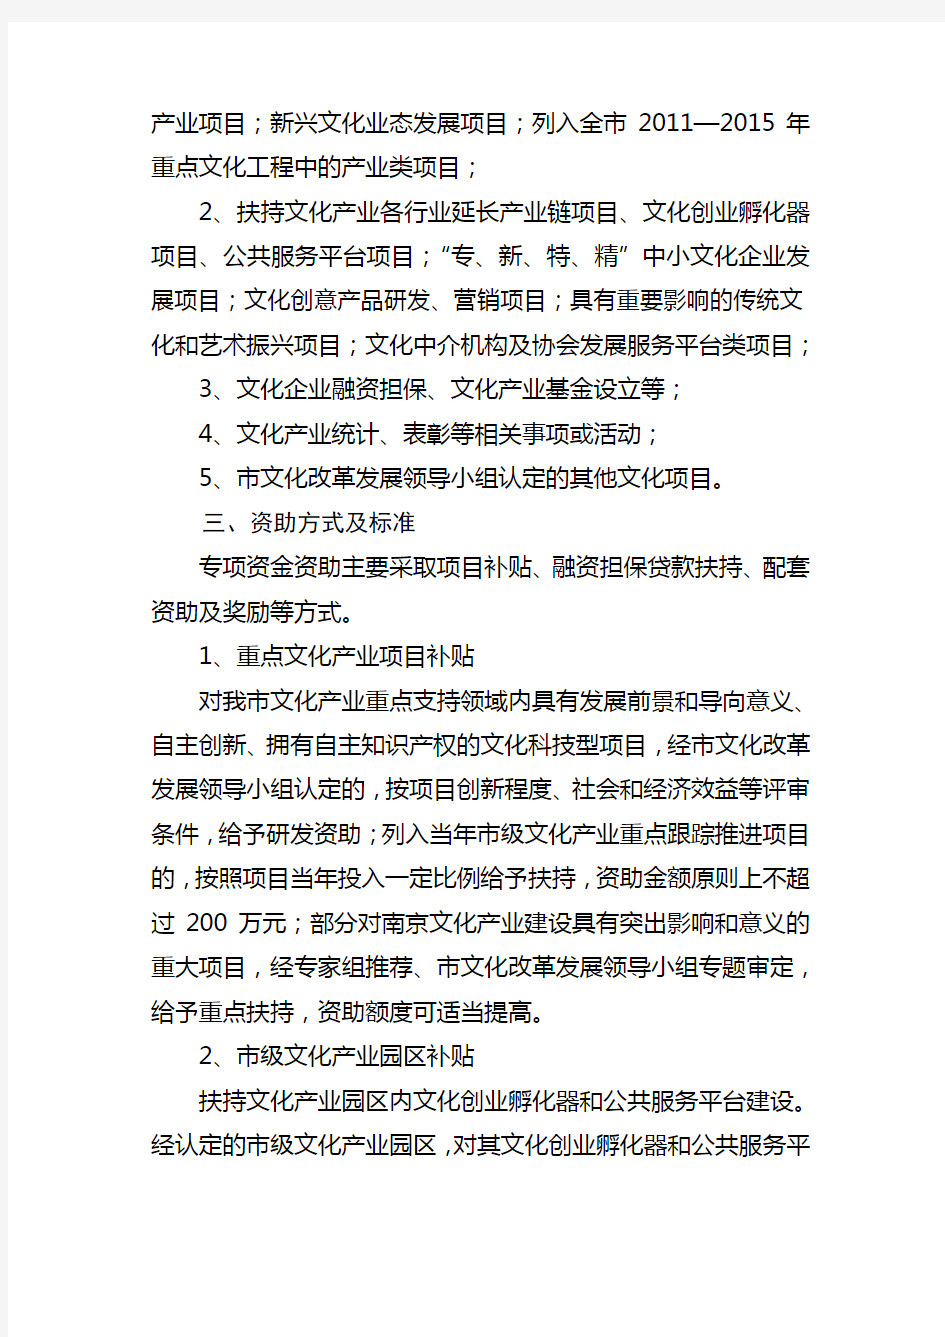 南京文化产业发展专项资金管理办法